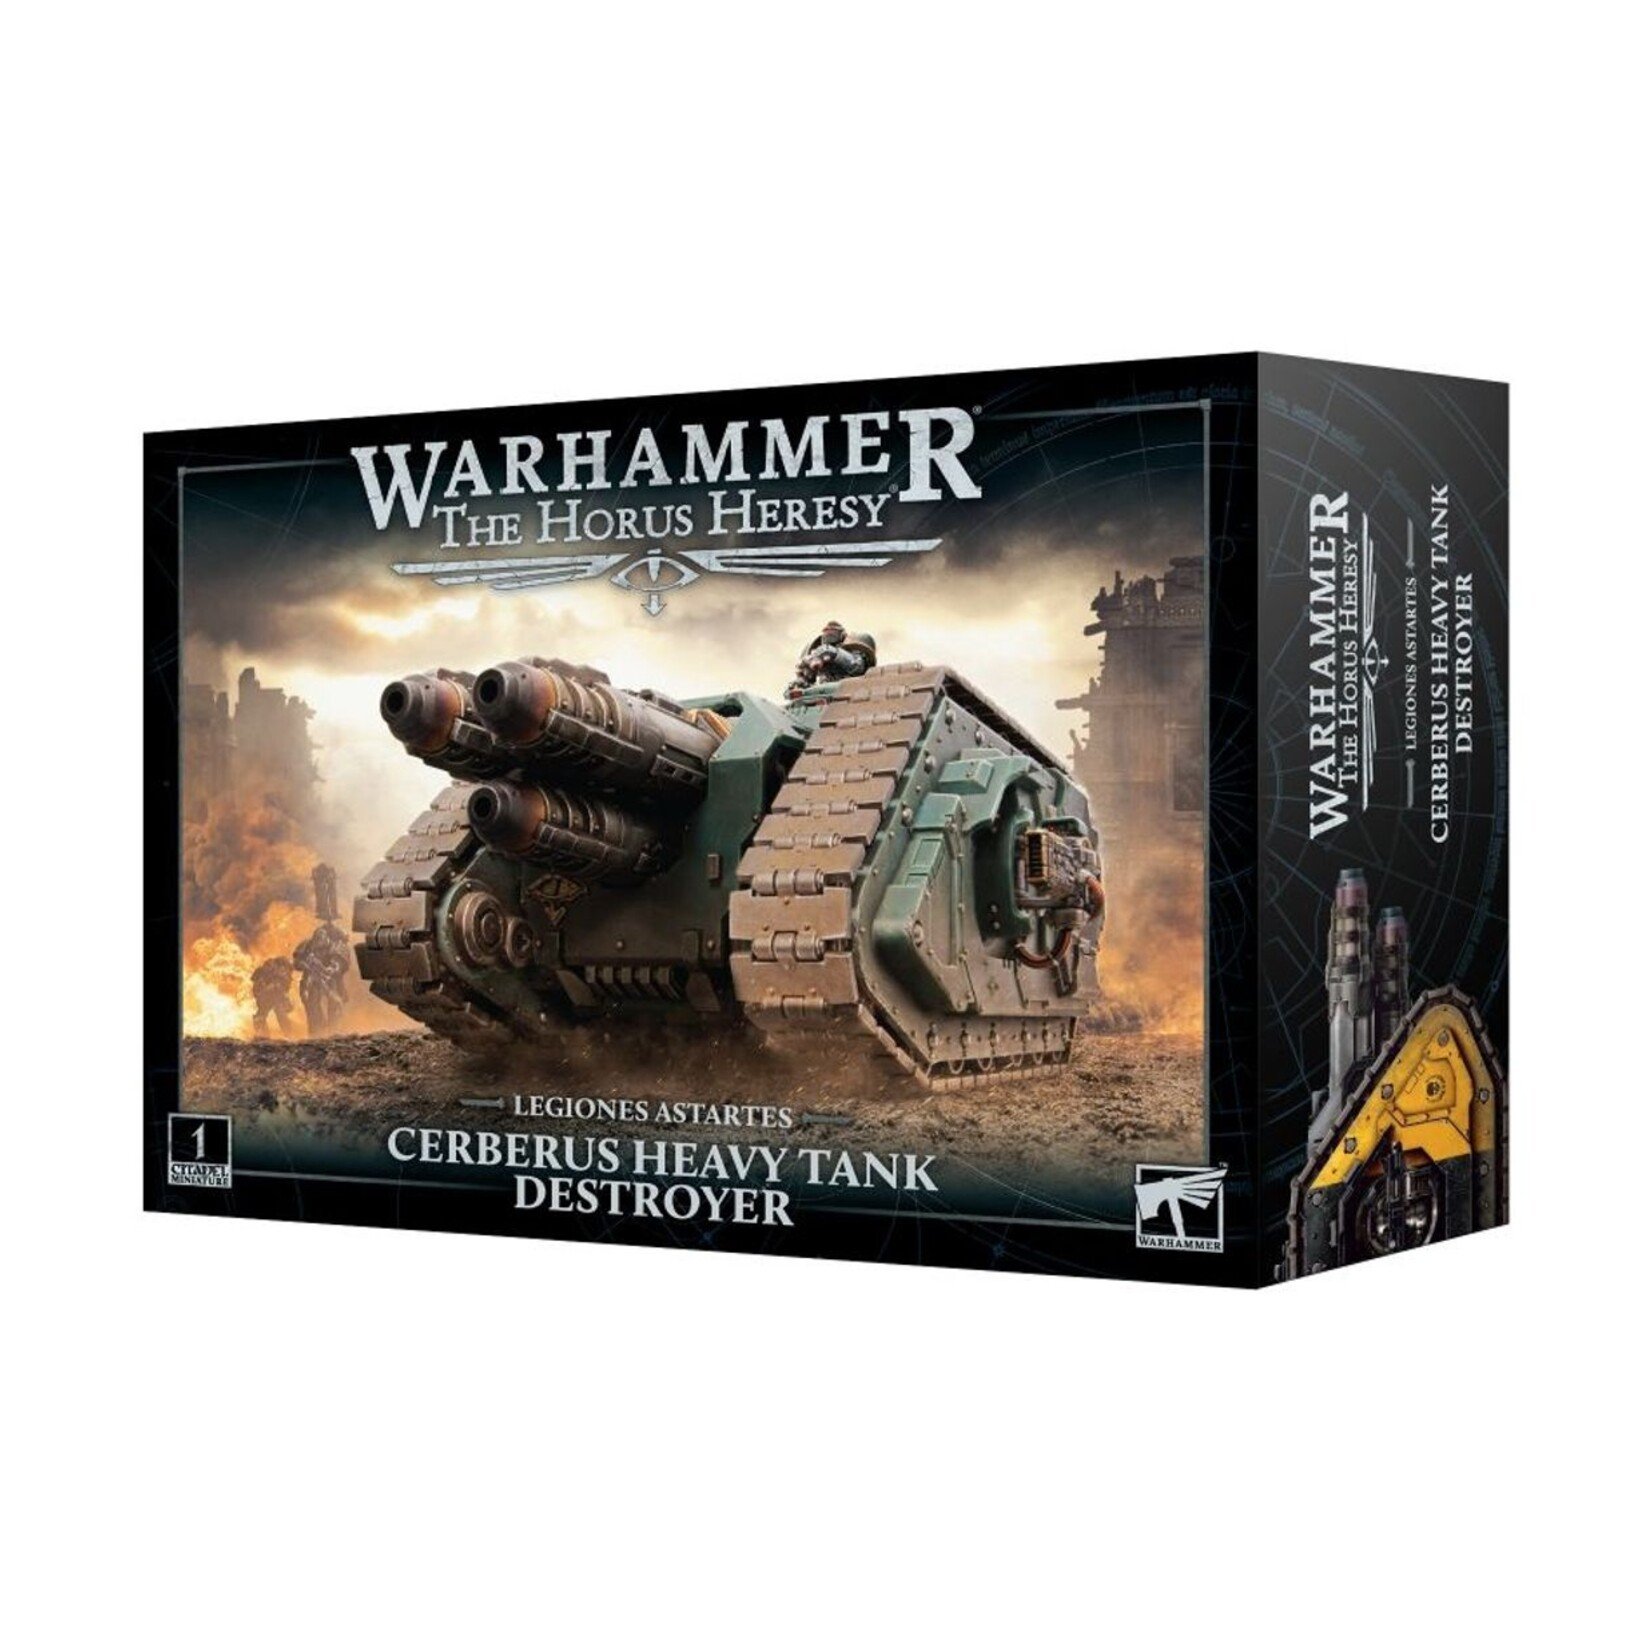 Warhammer: Horus Heresy Legiones Astartes: Cerberus Heavy Tank